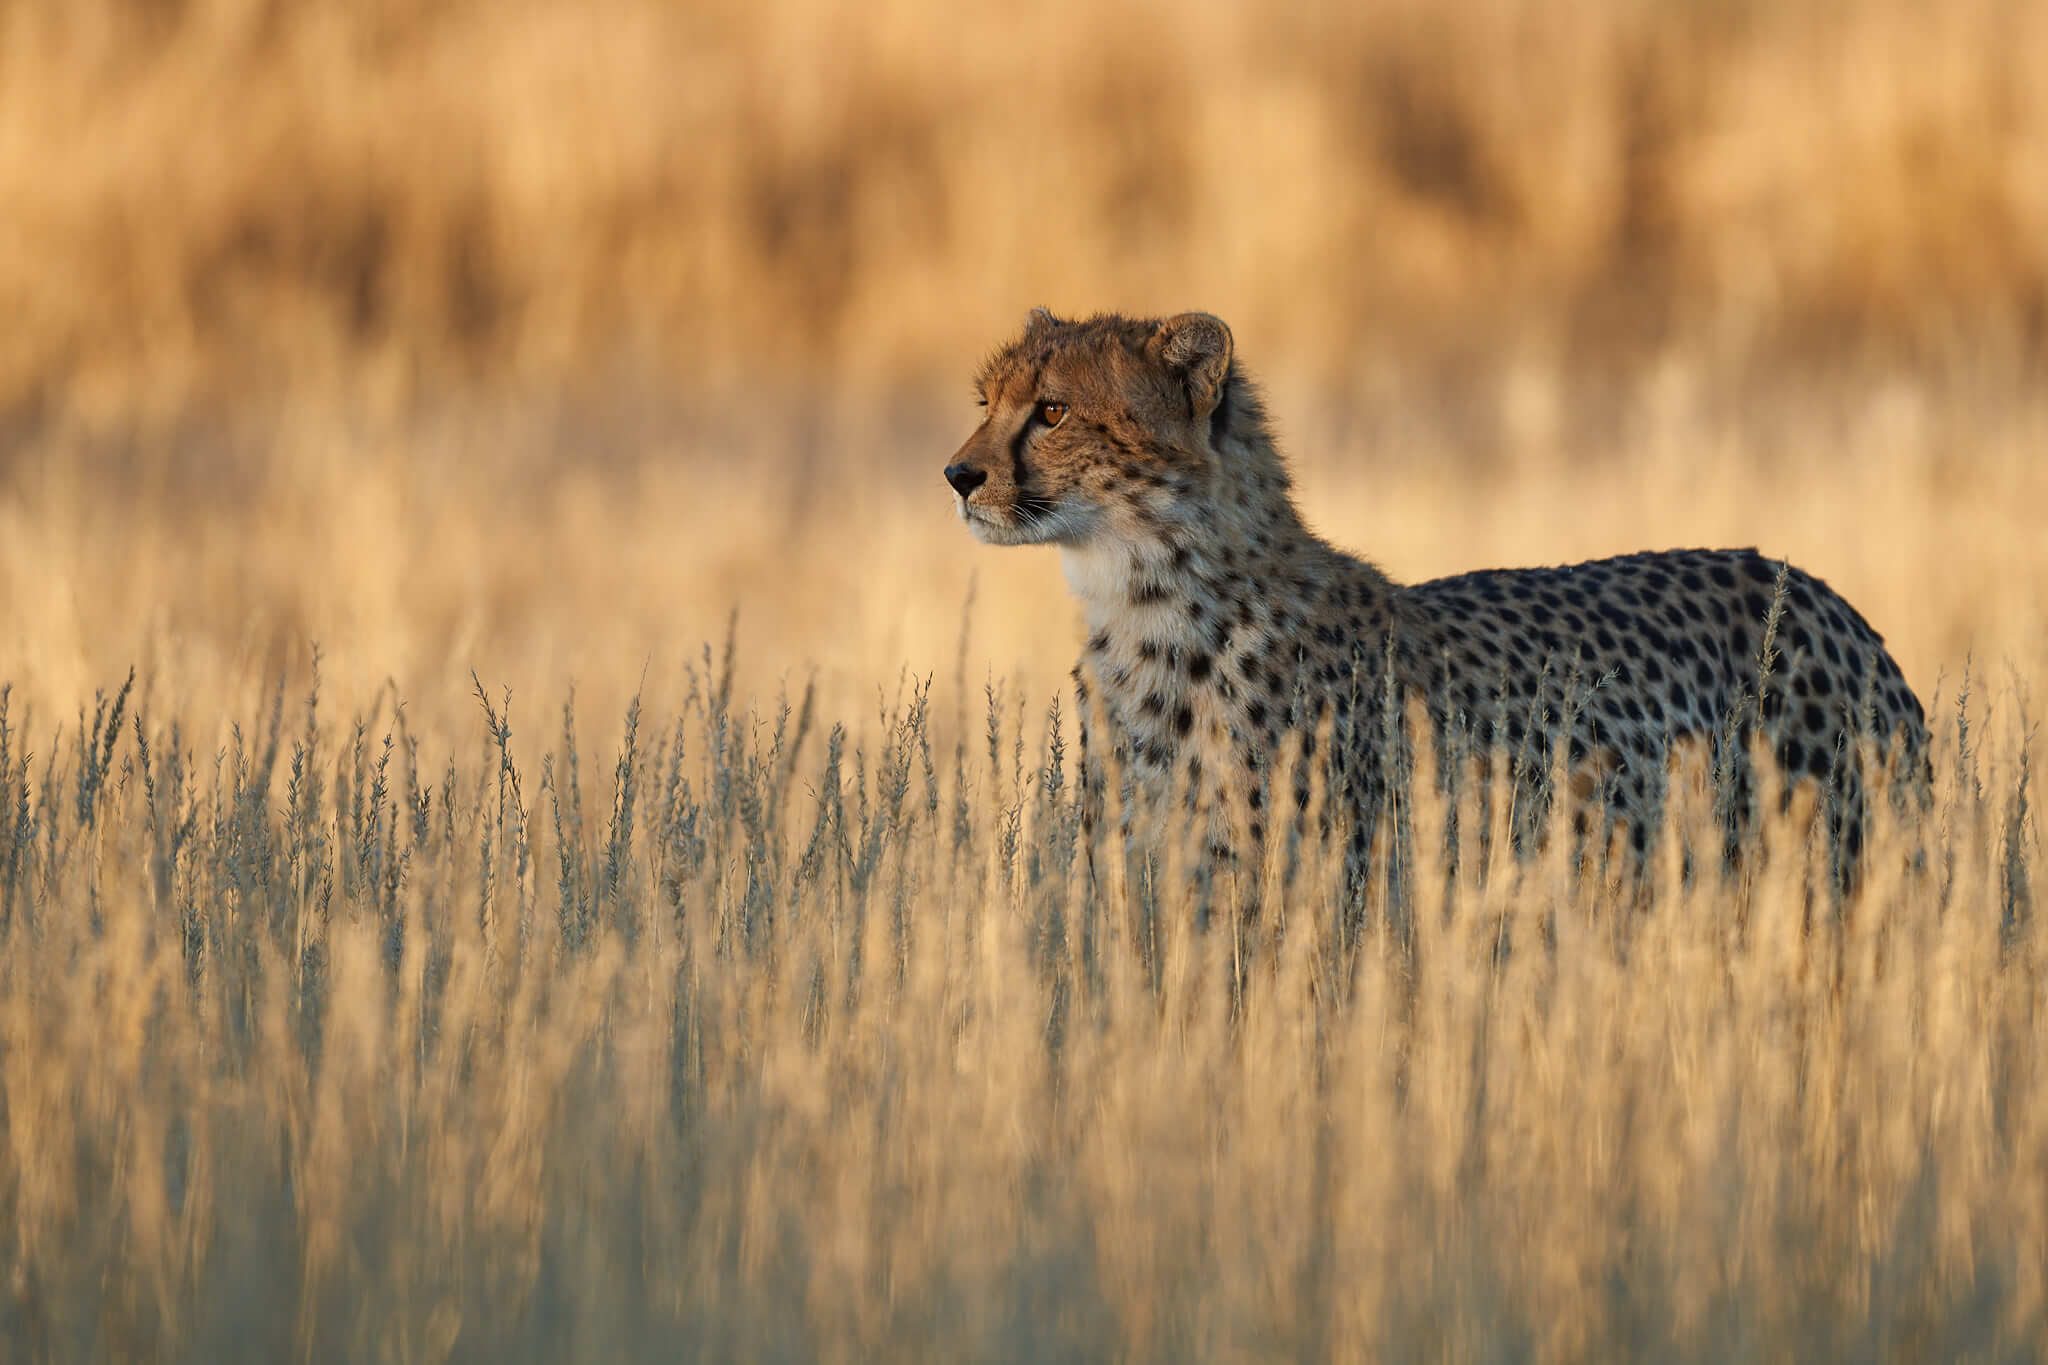 Das Bild zeigt einen geparden, der konzentriert in eine Richtung schaut